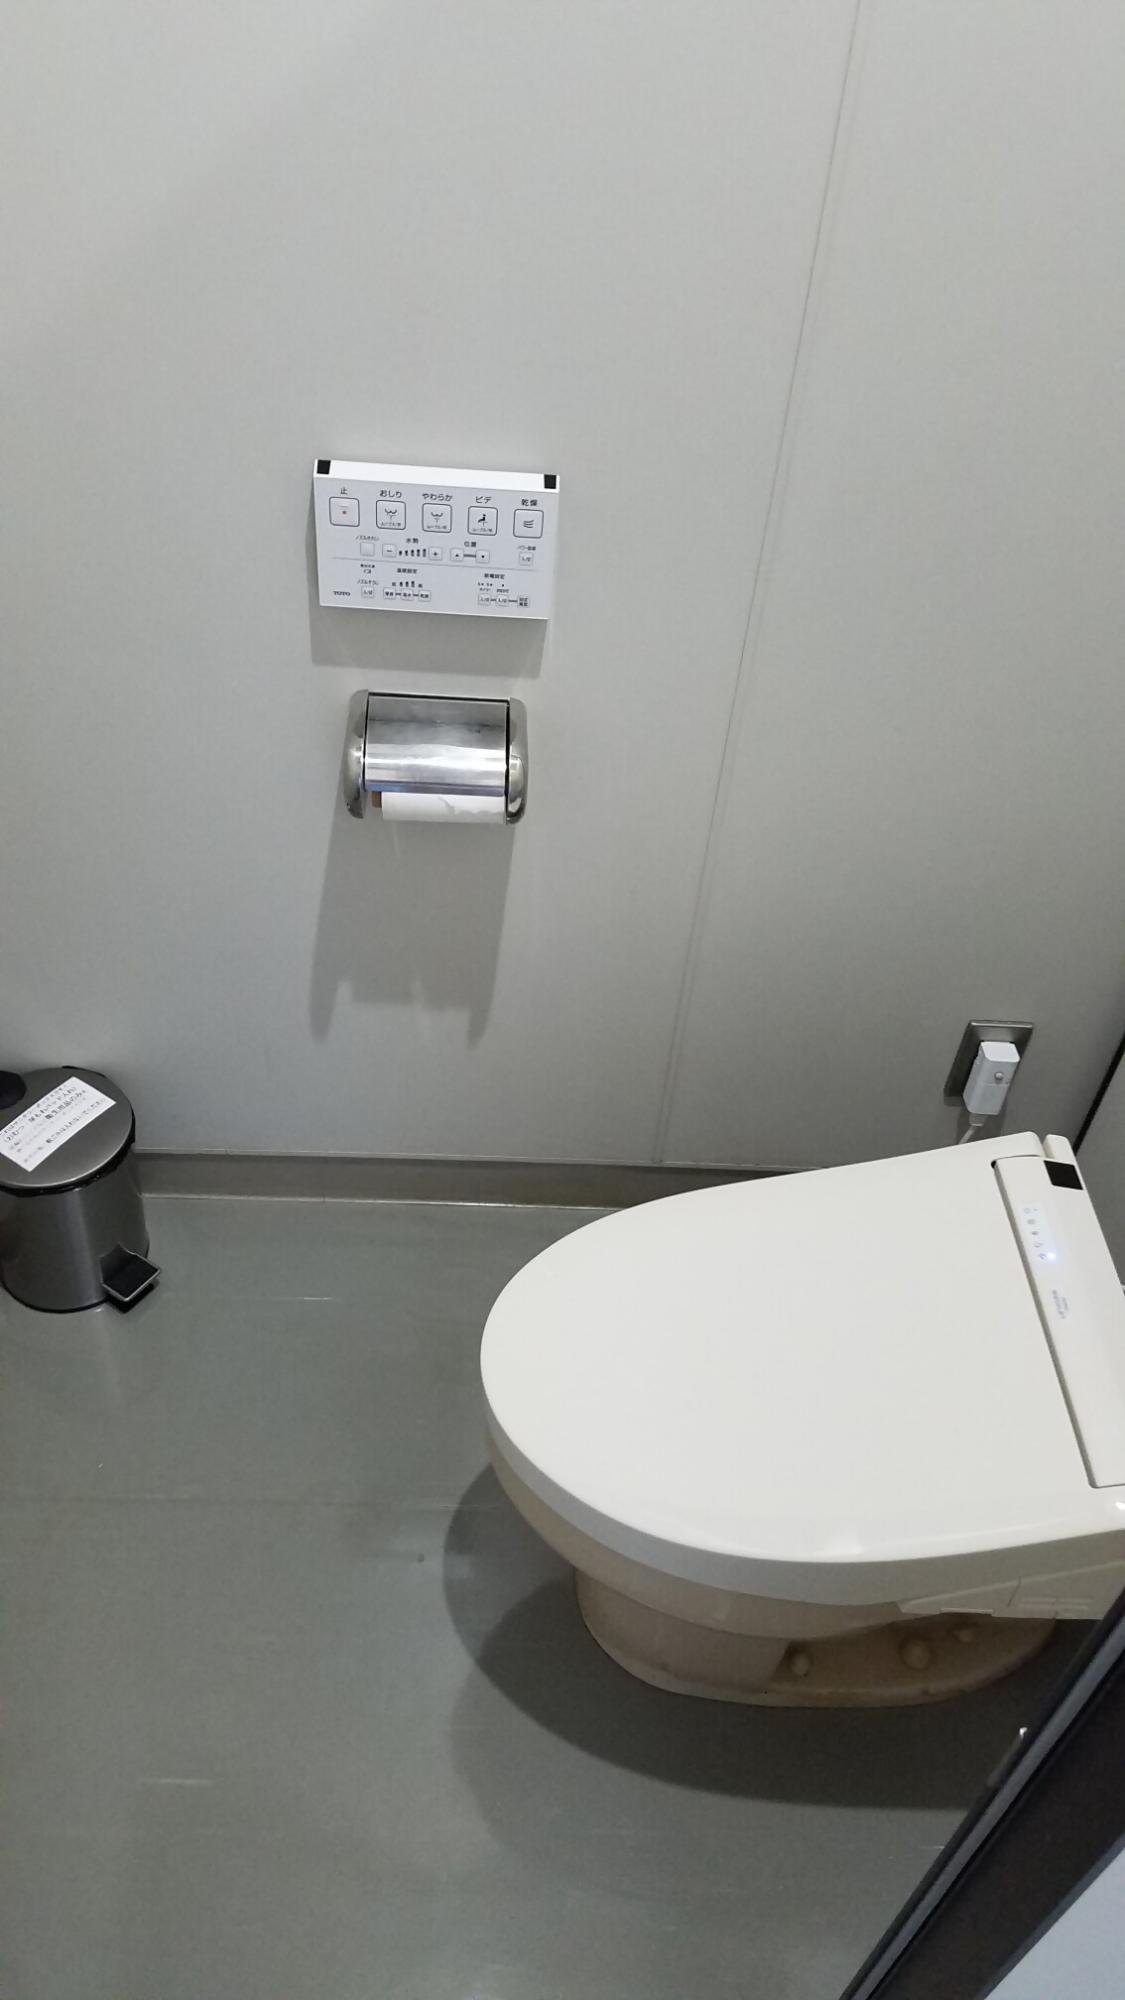 サニタリーボックス設置トイレ個室内部遠景写真